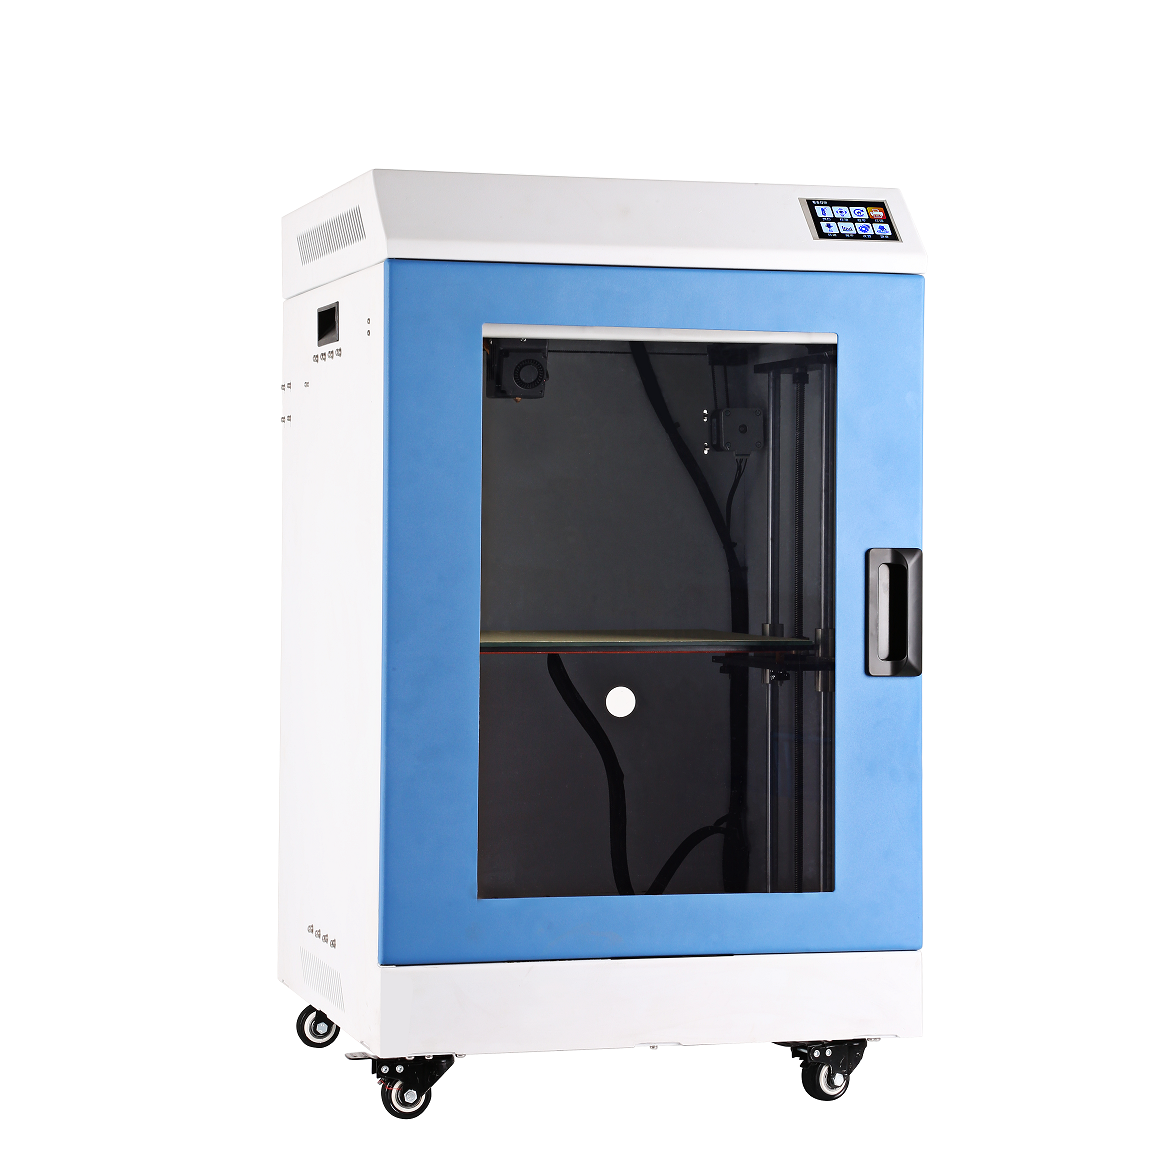 IME3D教育专用3D打印机/3D打印机厂家 教育3D打印机图片